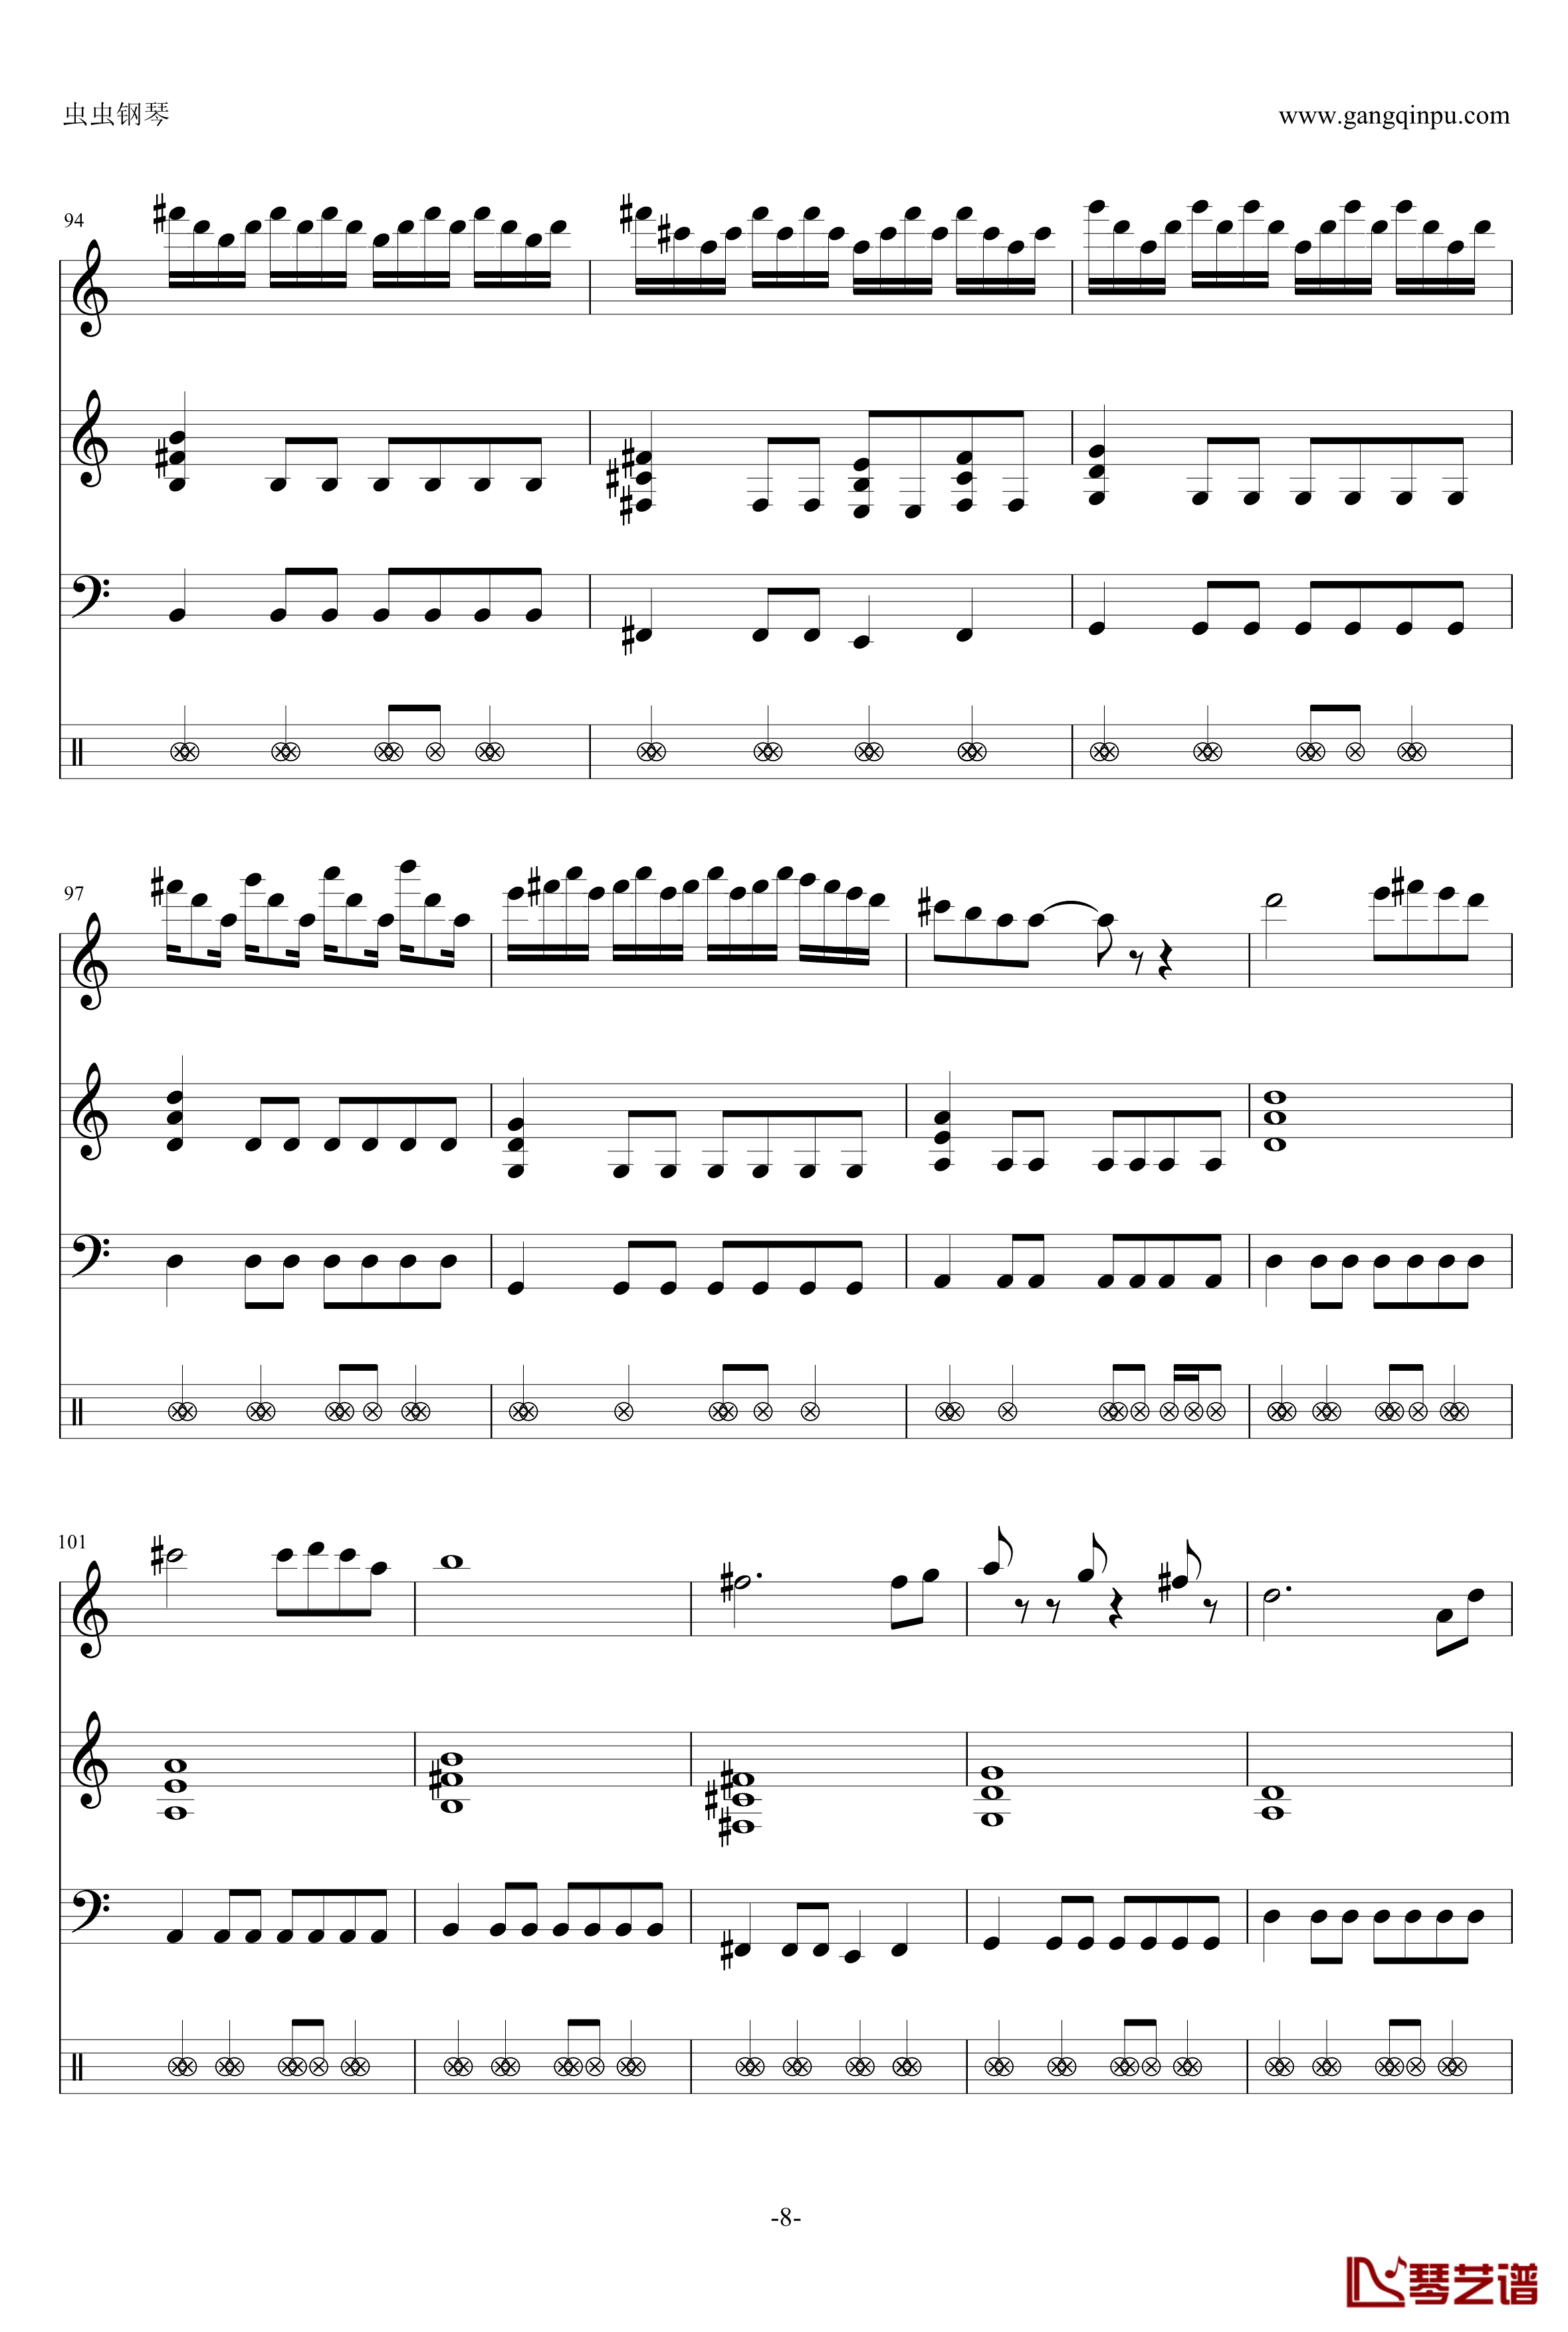 钢琴摇滚卡农钢琴谱-帕赫贝尔-Pachelbel8